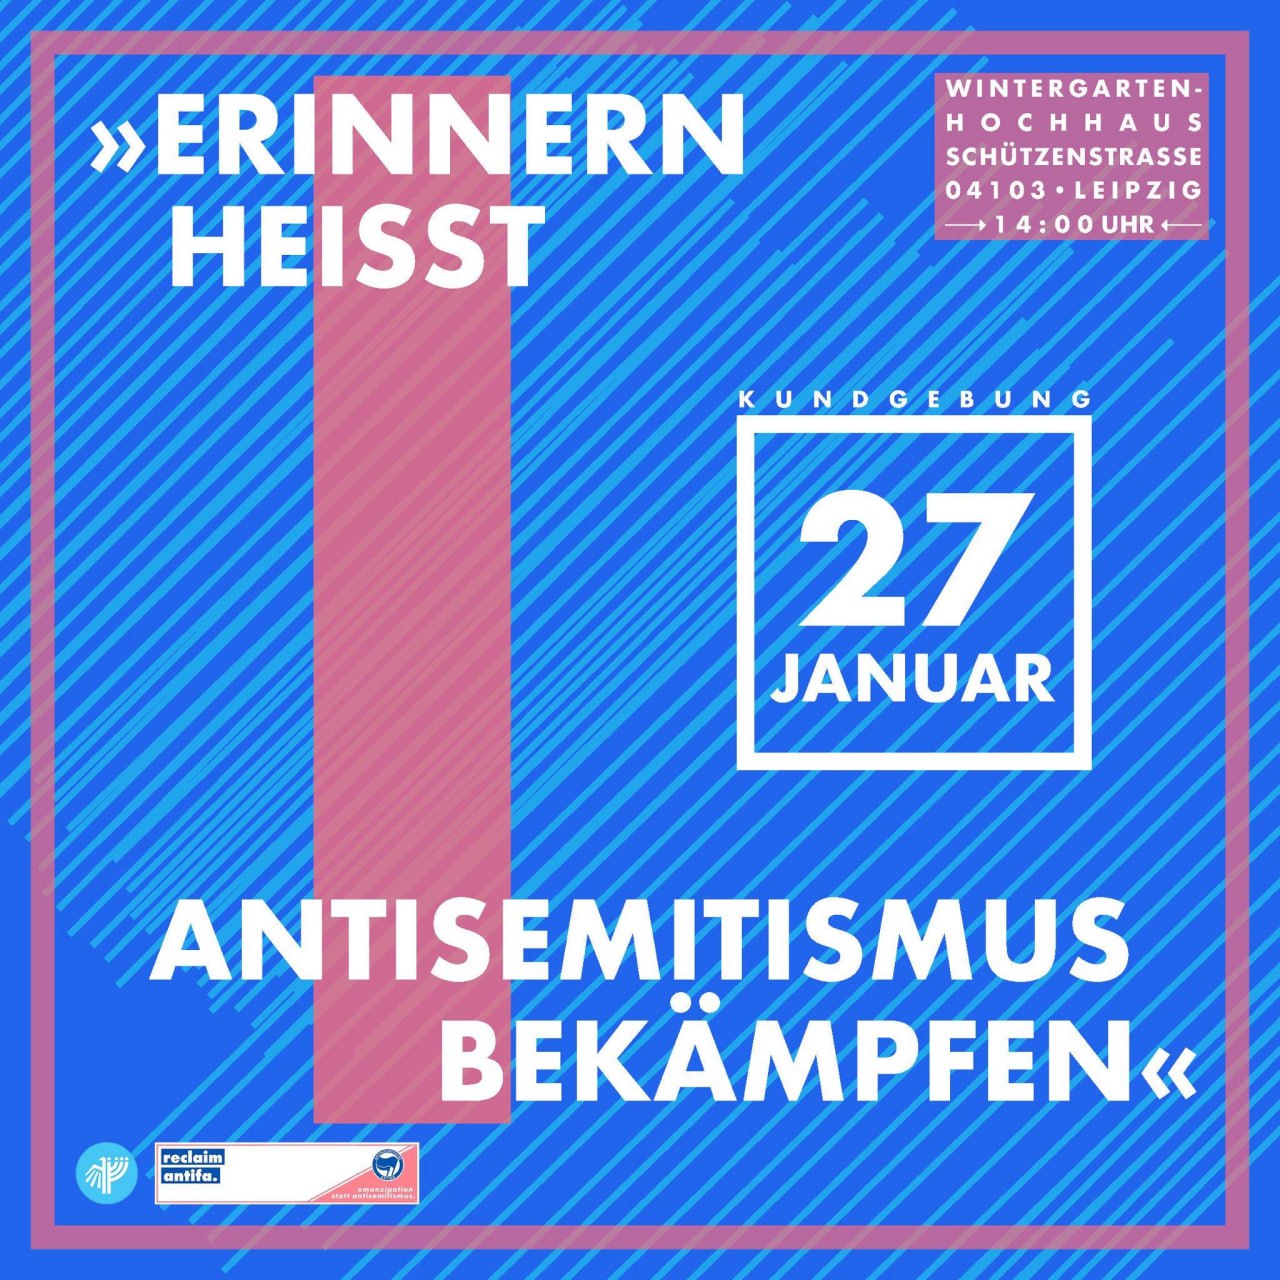 Kundgebung: Erinnern heißt Antisemitismus bekämpfen